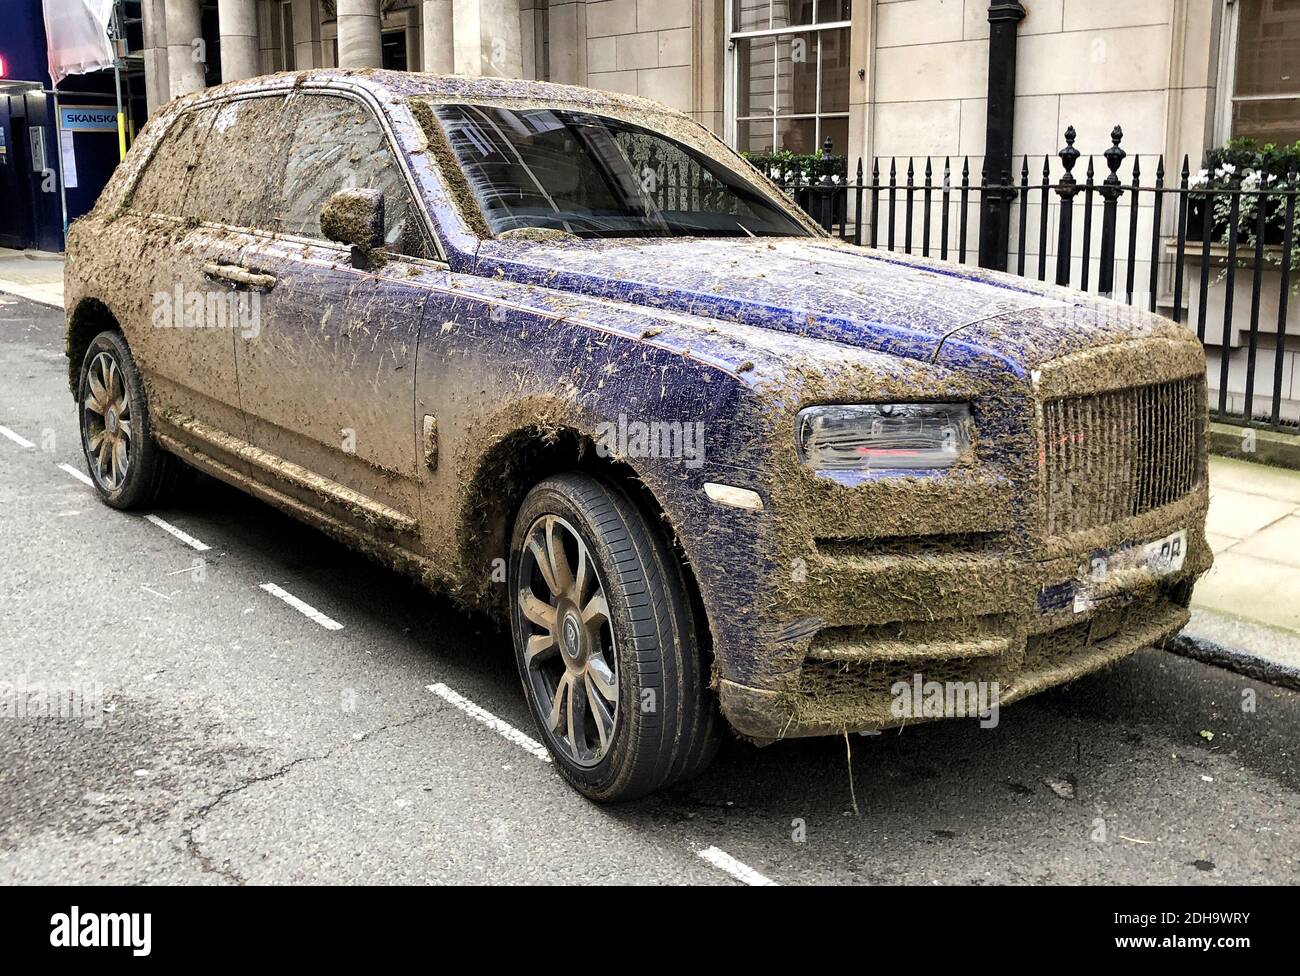 LONDON - DEZEMBER 10: Ein Rolls Royce parkte heute, am 10. Dezember 2020, in Haymarket, im Zentrum von London. Es scheint ein Opfer von einem Bauern Gülle Spritzen an seinem früheren Standort gewesen zu sein... Foto: © 2020 David Levenson/Alamy Live News Stockfoto